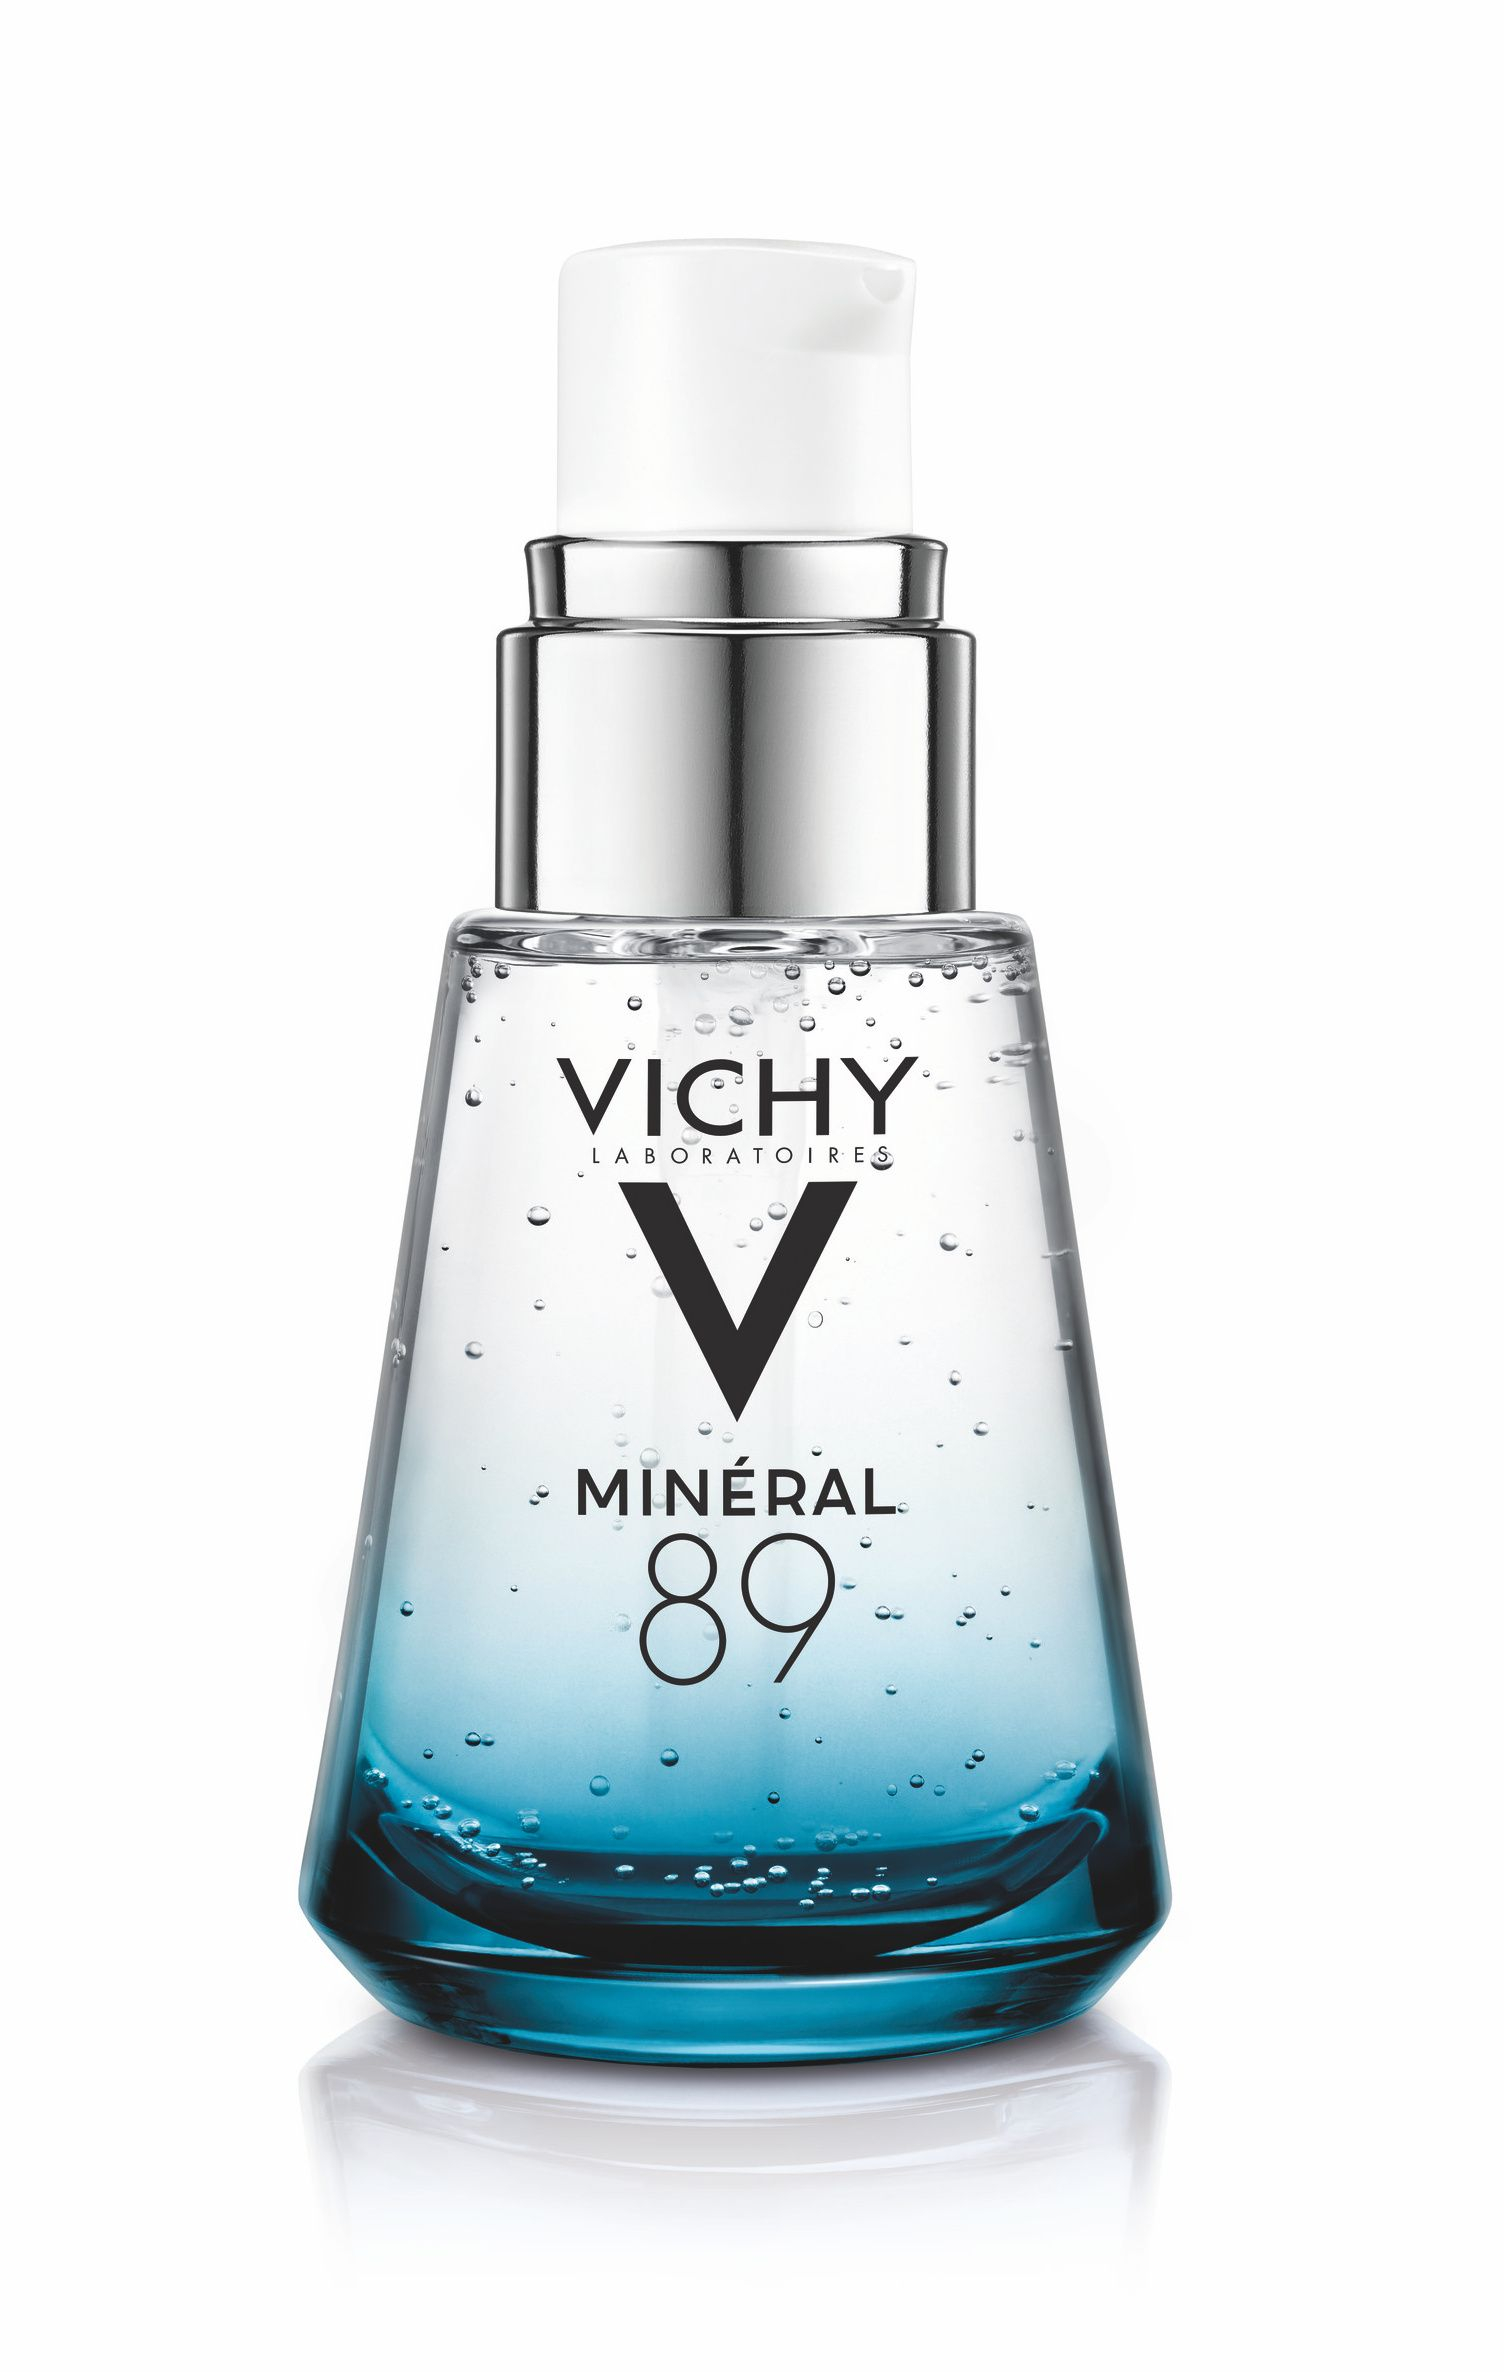 Vichy Minéral 89 Posilující a vyplňující hyaluron booster 30 ml Vichy